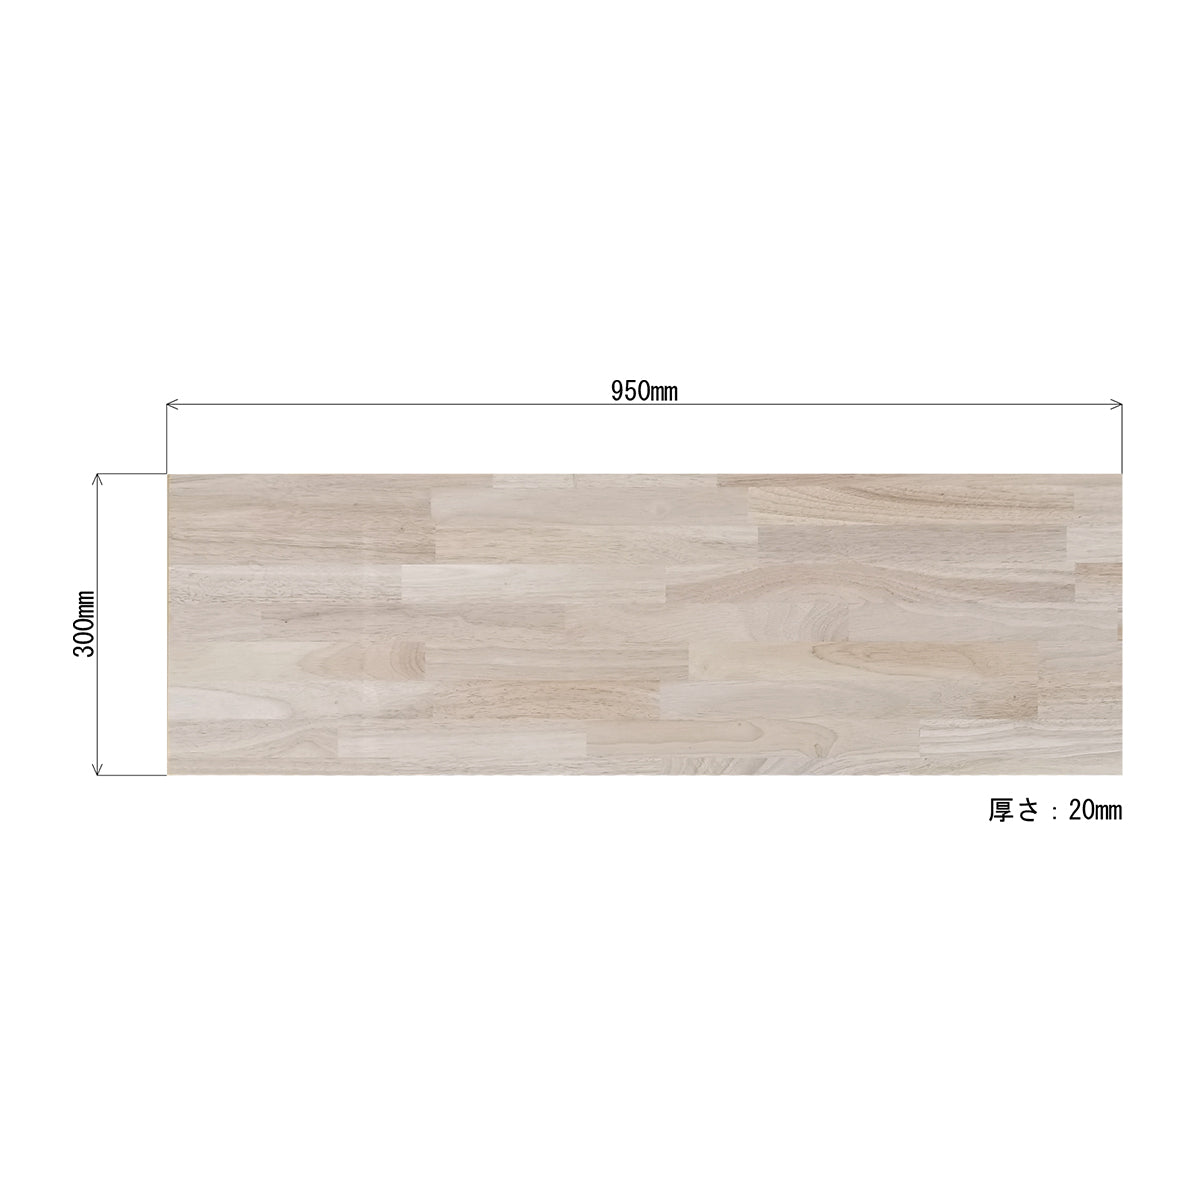 スクエア棚受け用 木製板 95cm×30cm×2cm (ゴム材 1枚) 納期30営業日程度